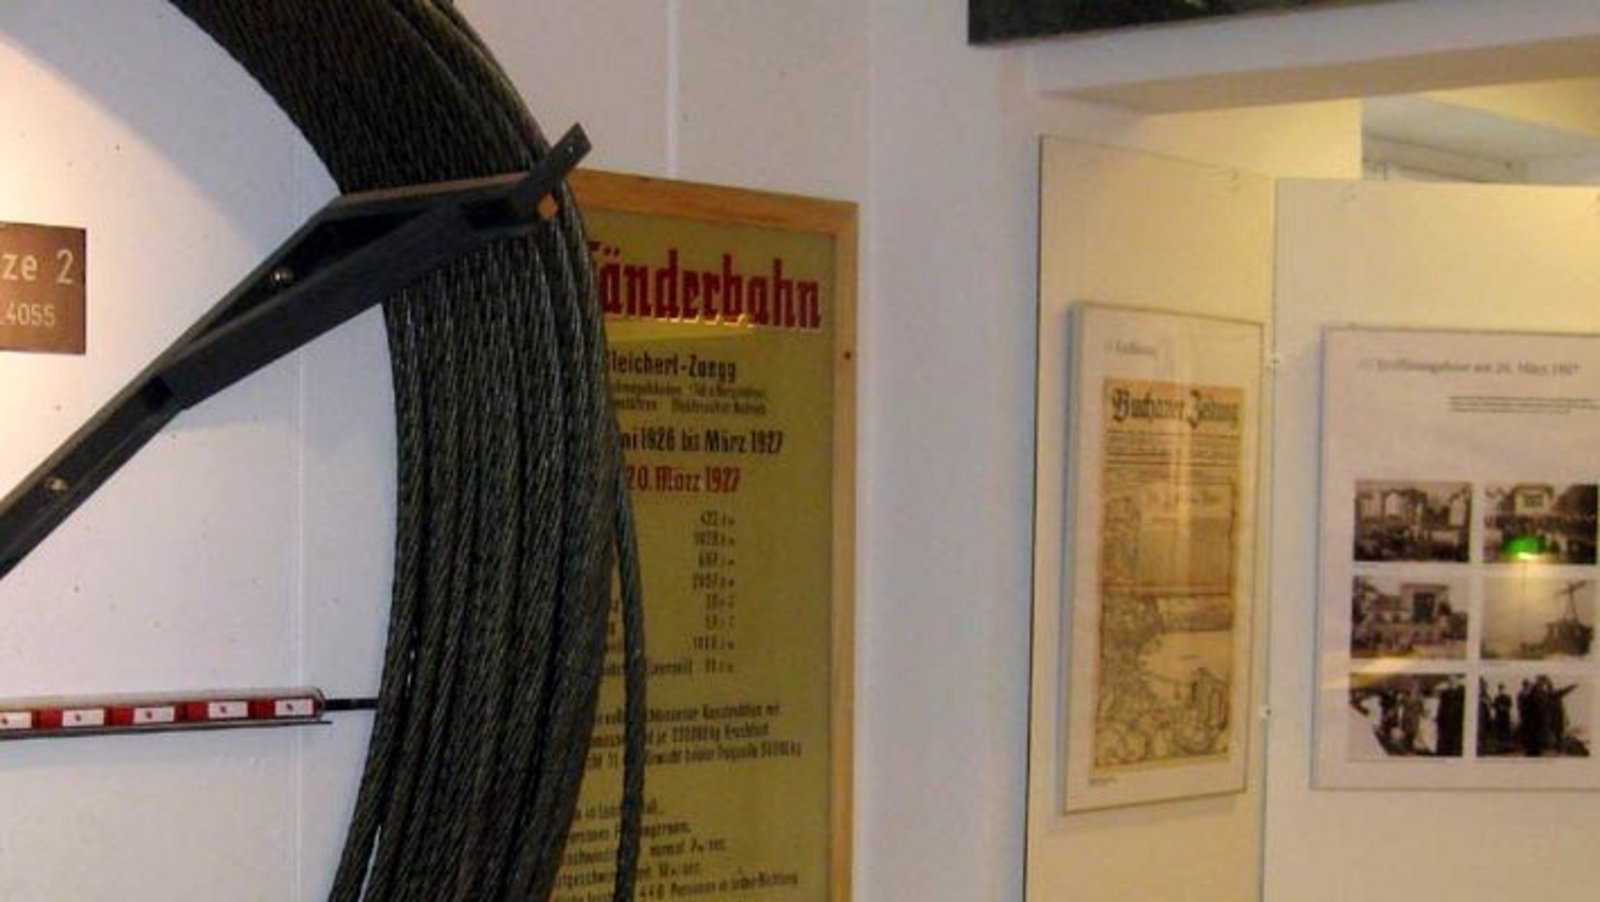 Bild vom Pfänderbahnmuseum von innen